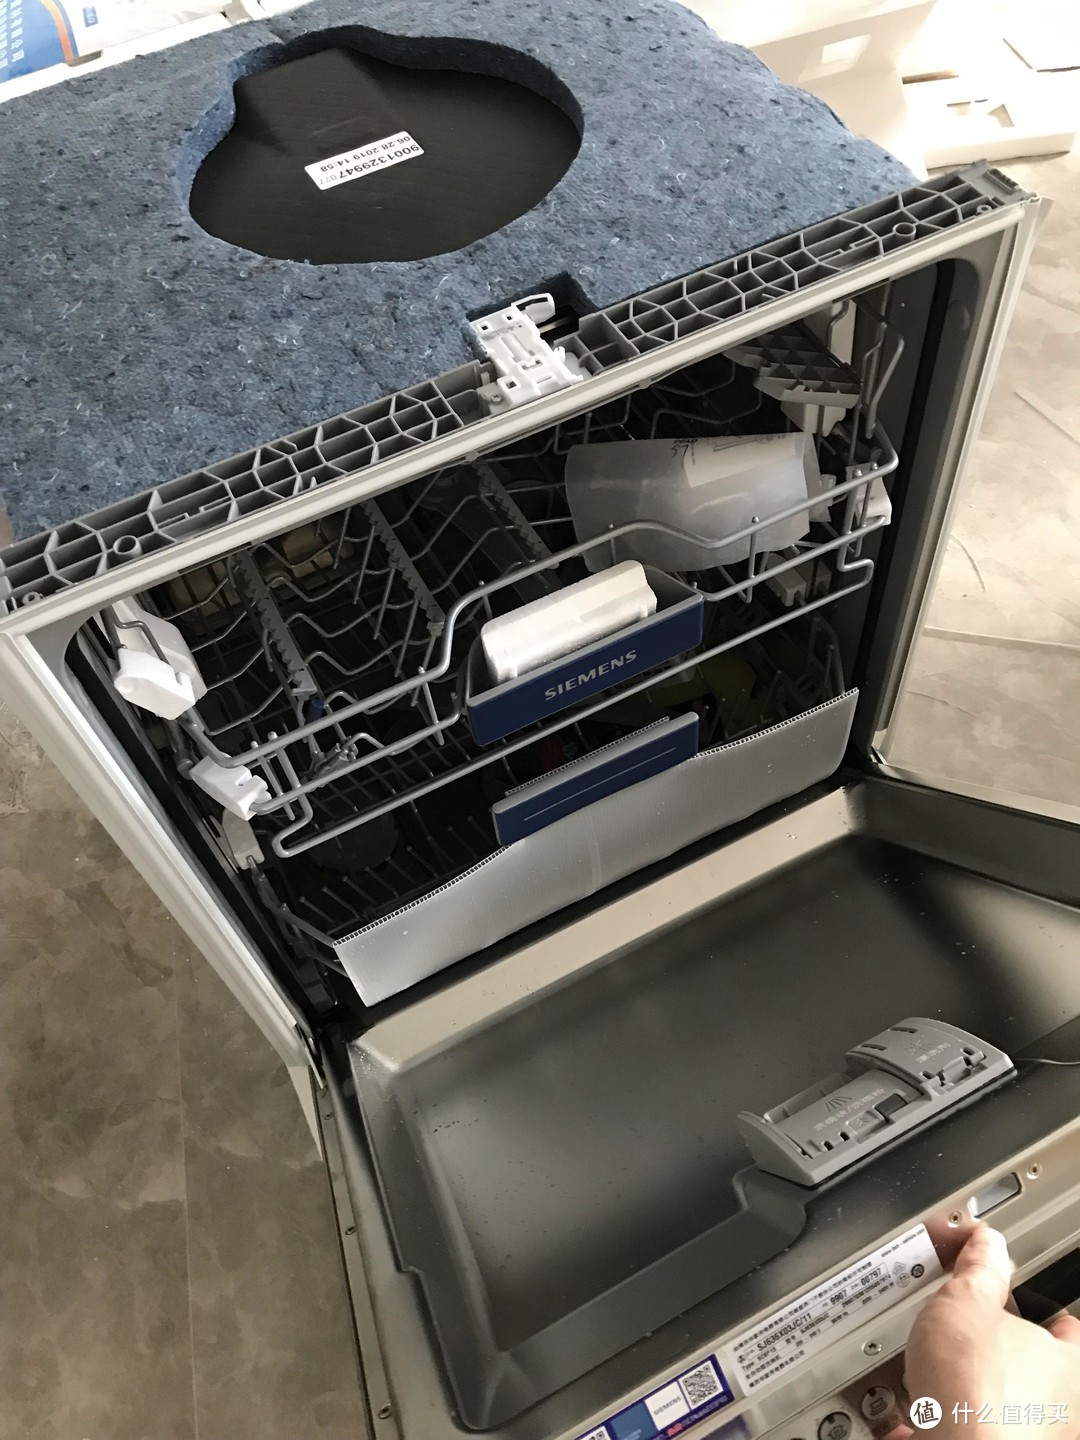 西门子洗碗机（嵌入式）sj636x03jc 装修安装小结